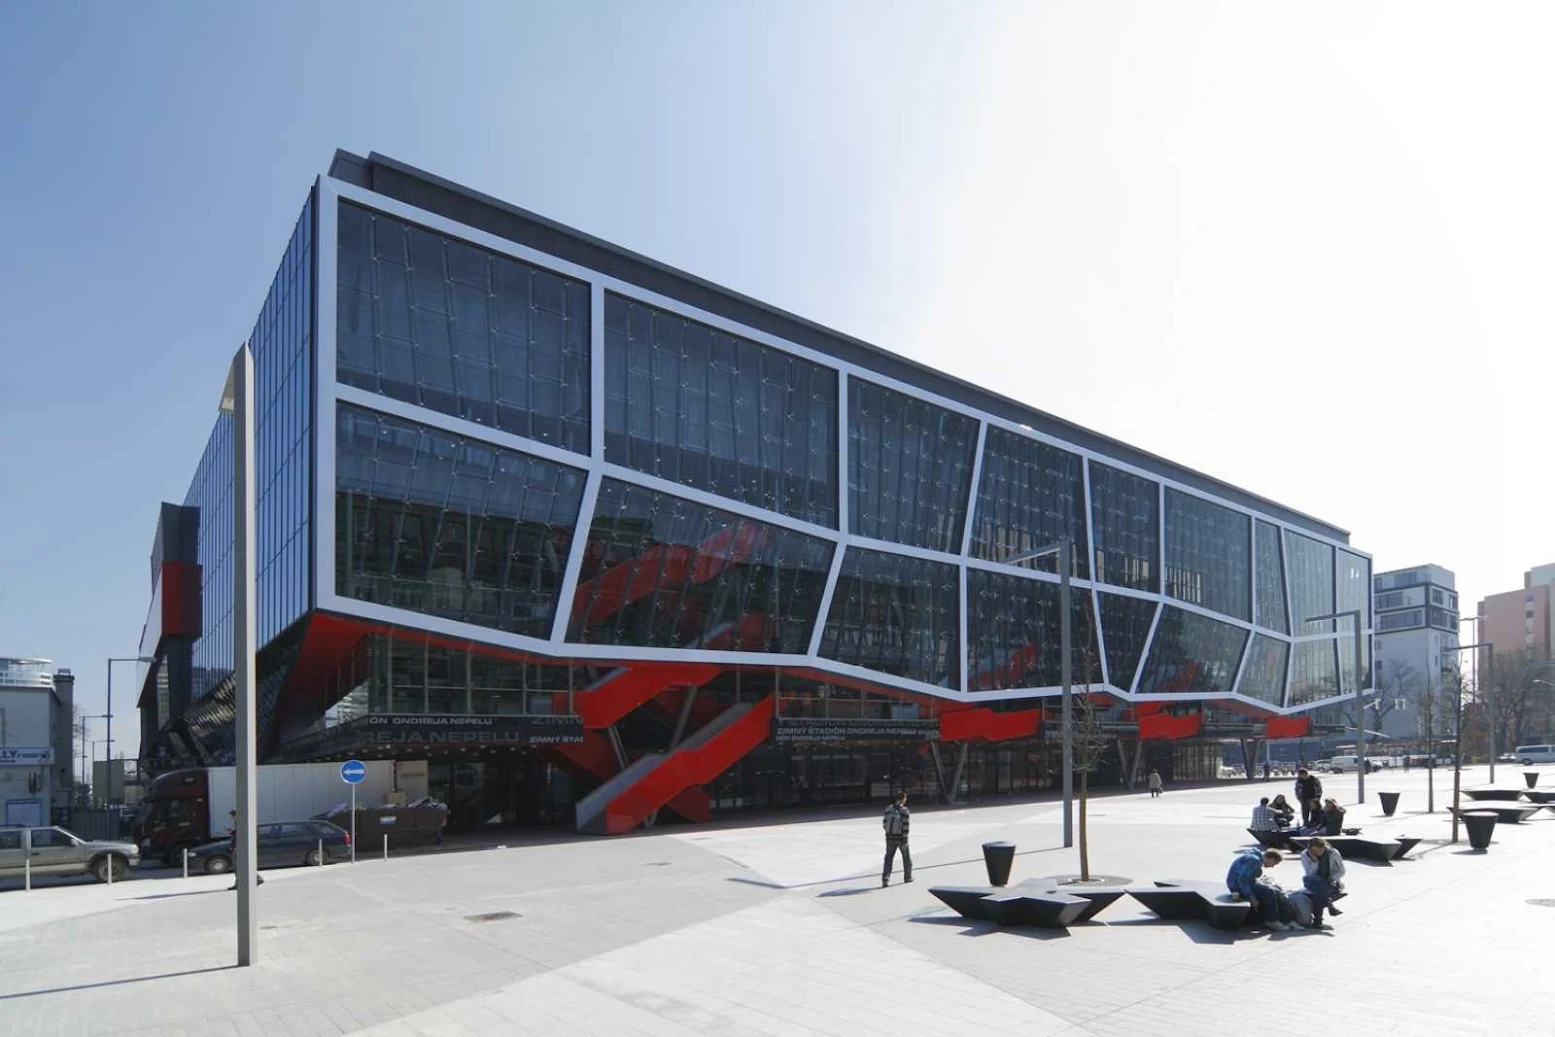 Ondrej Nepela Ice Hockey Stadium by Fischer Architects